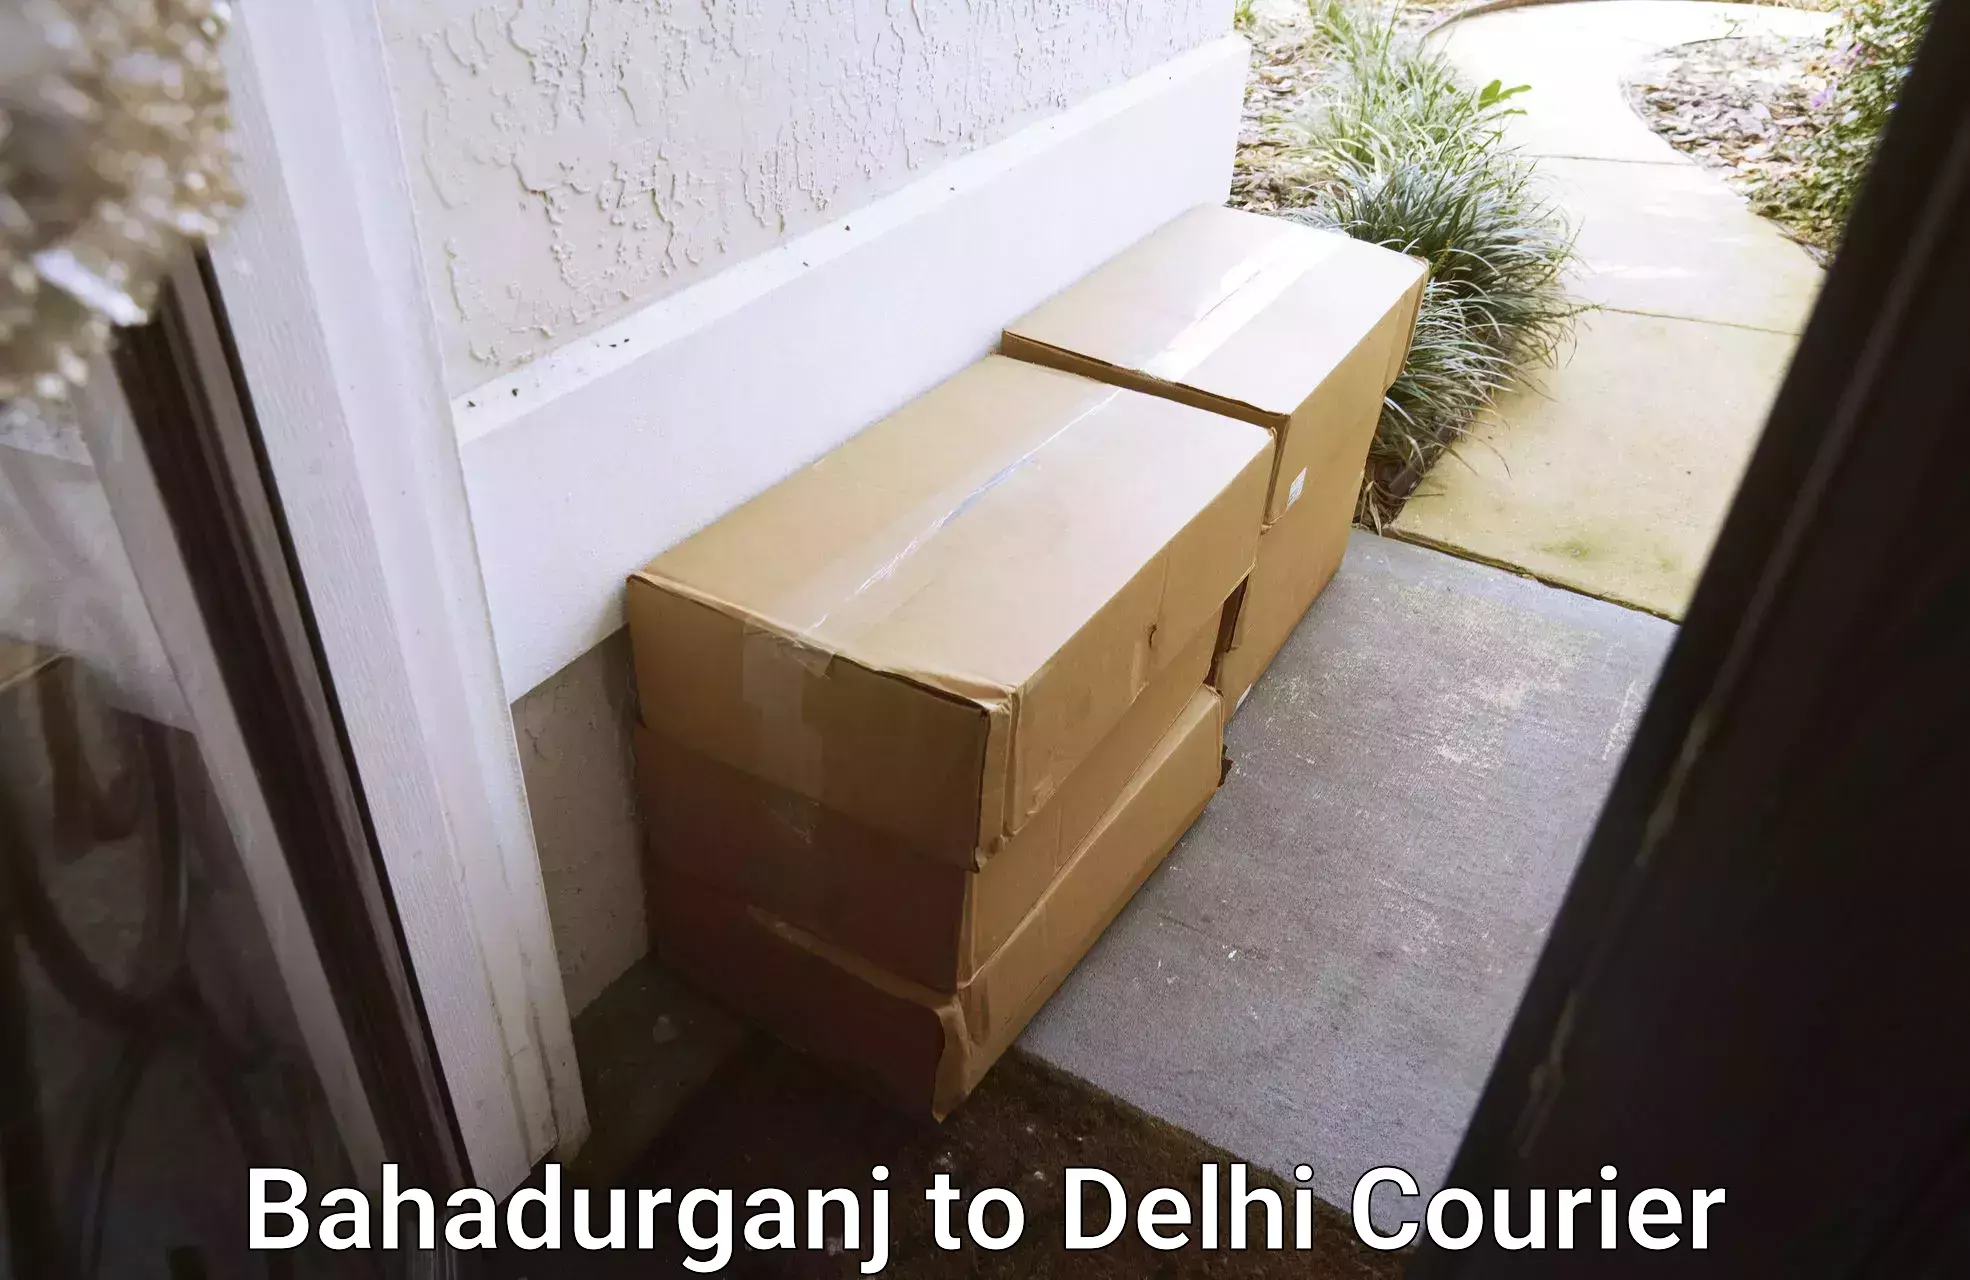 Professional home movers Bahadurganj to Delhi